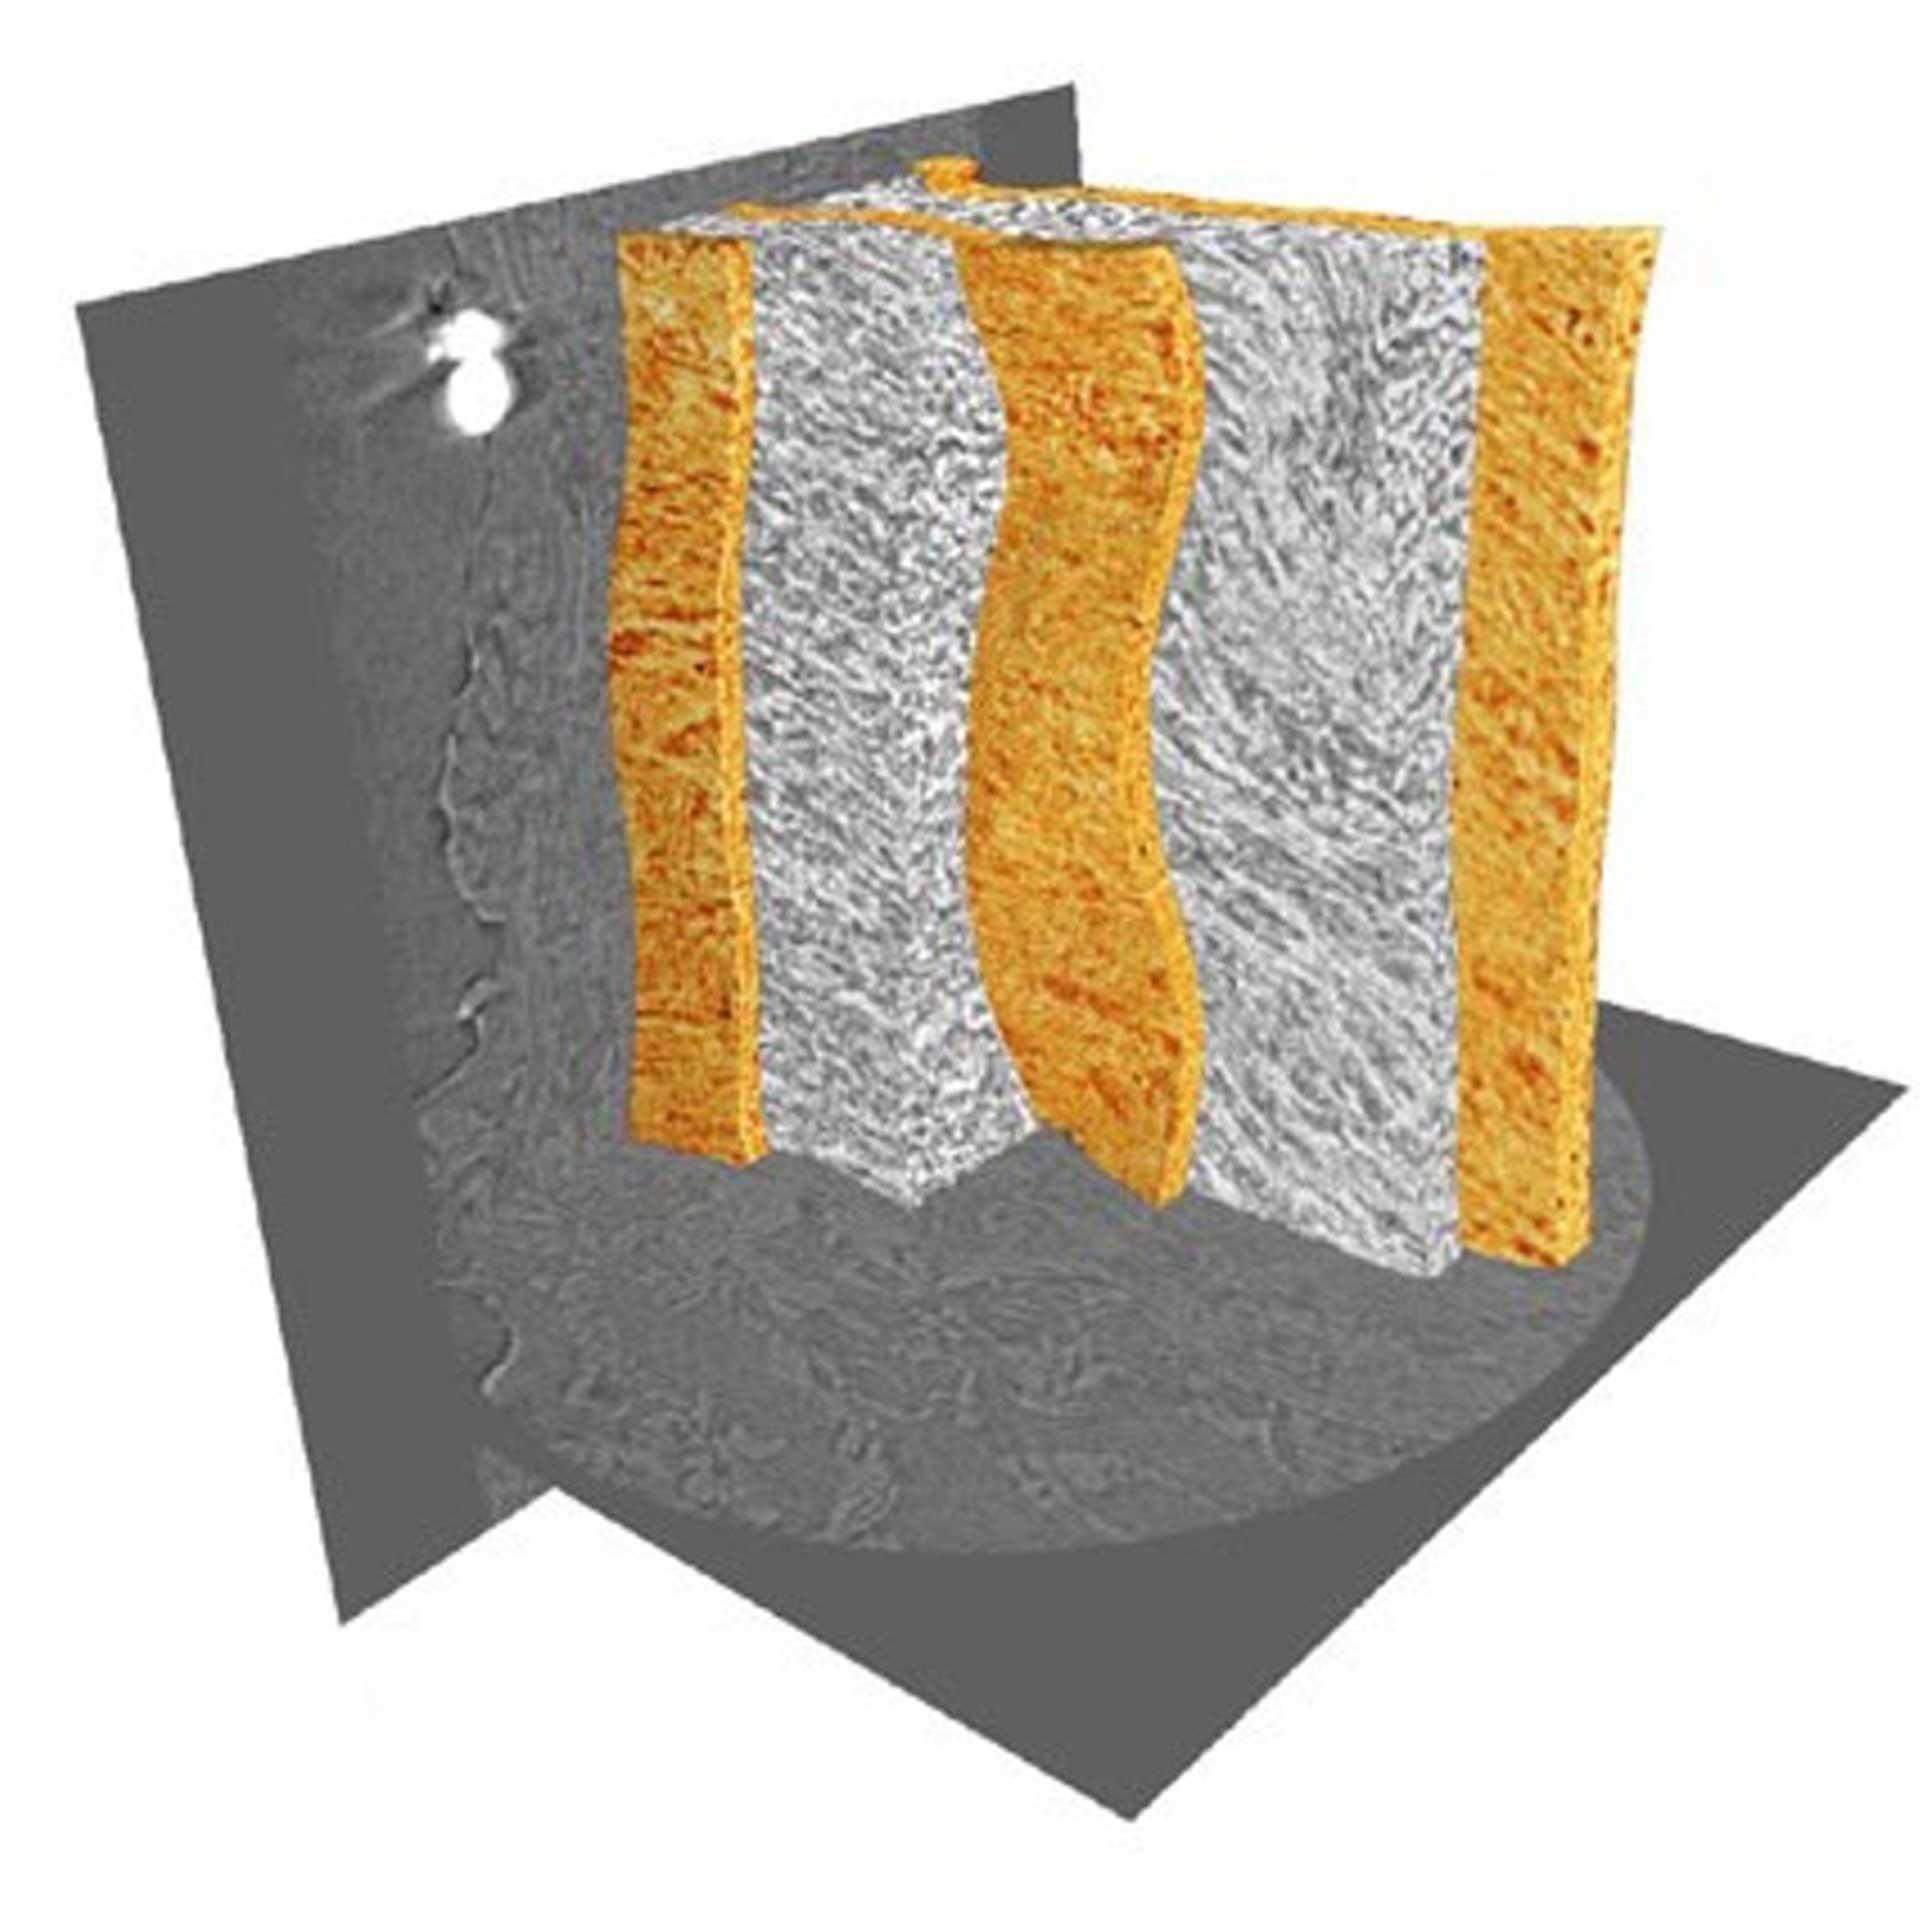 Lamelles élastiques (orange) et régions interlamellaires visualisées dans un tissu non coloré de paroi artérielle de rat. Image réalisée avec Xradia 800 Ultra. Images fournies avec l'aimable autorisation du l'Université de Manchester, R.U. (épaisseur d'échantillon de 90 µm).